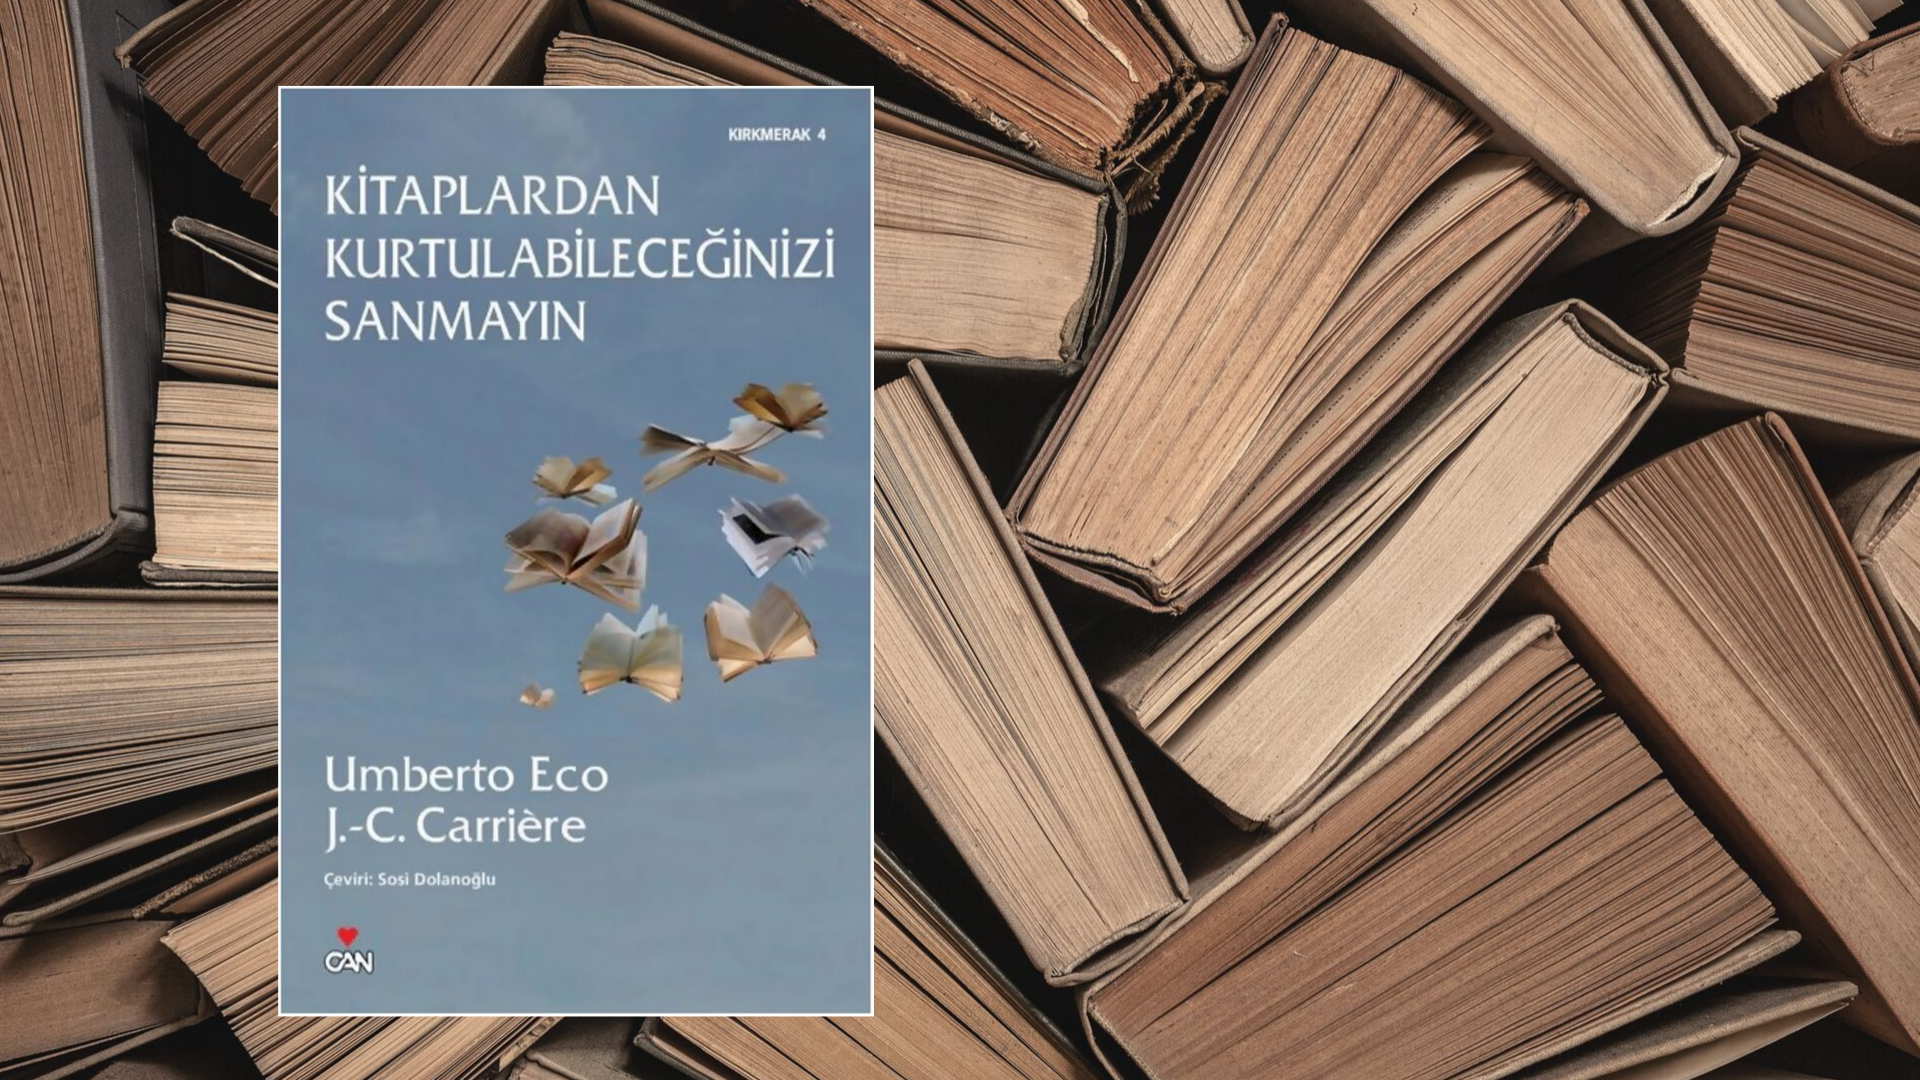 Kitap: Kitaplardan Kurtulabileceğinizi Sanmayın | Yazarlar: Umberto Eco & J.C. Carriere | Yorumlayan: Hülya Erarslan